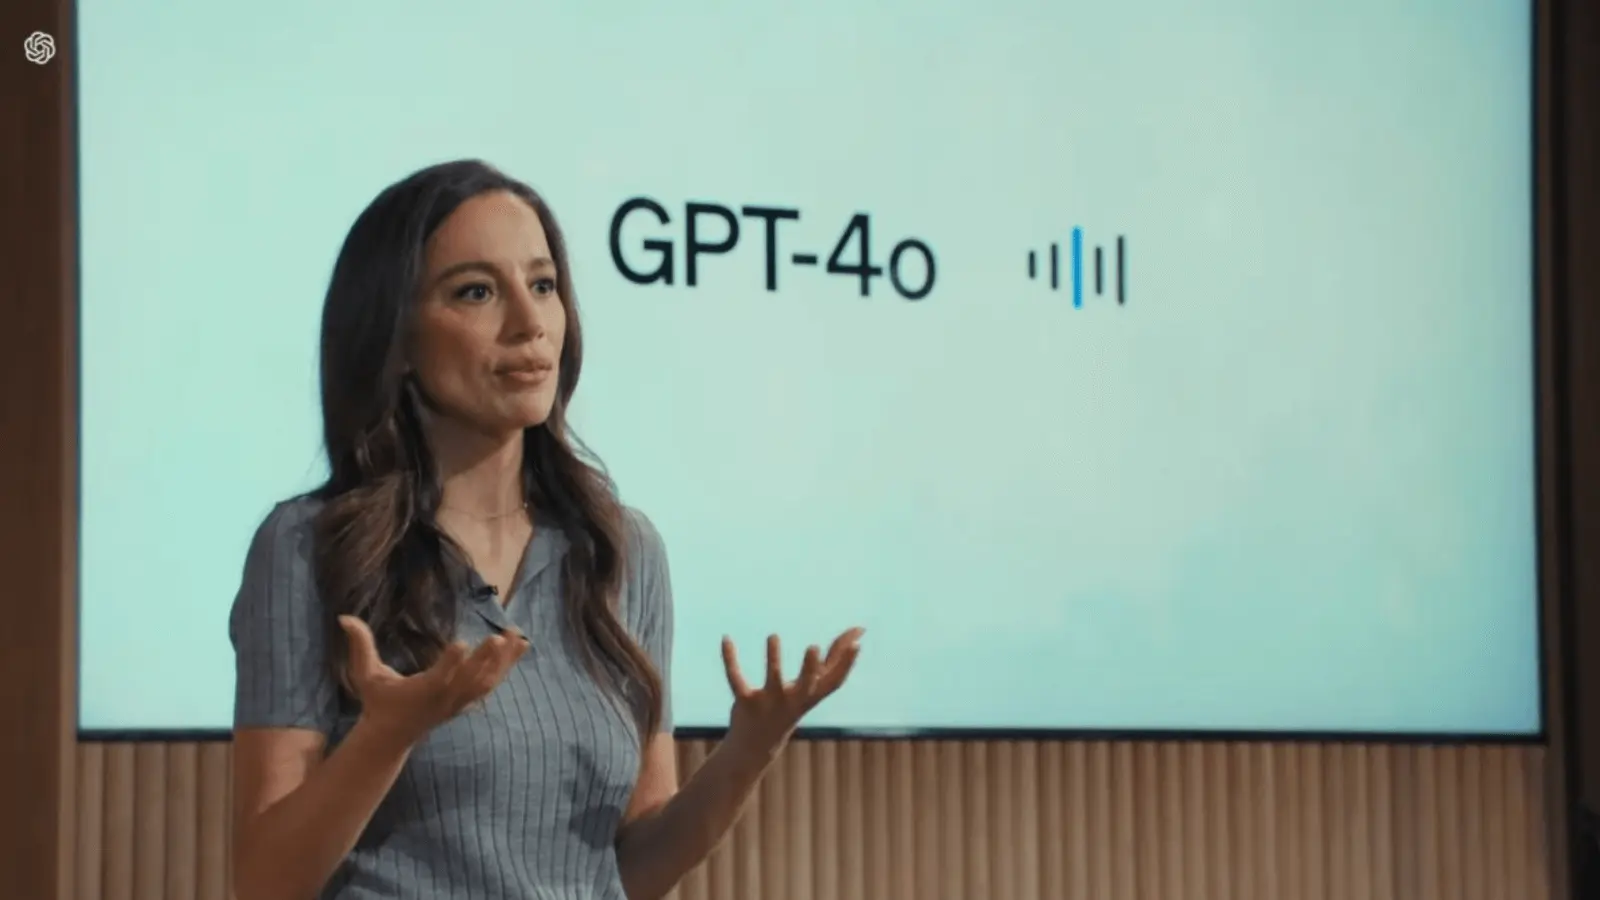 Mira Murati, CTO la compania OpenAI, a anunțat lunea aceasta într-un livestream noua actualizare a modelului GPT-4